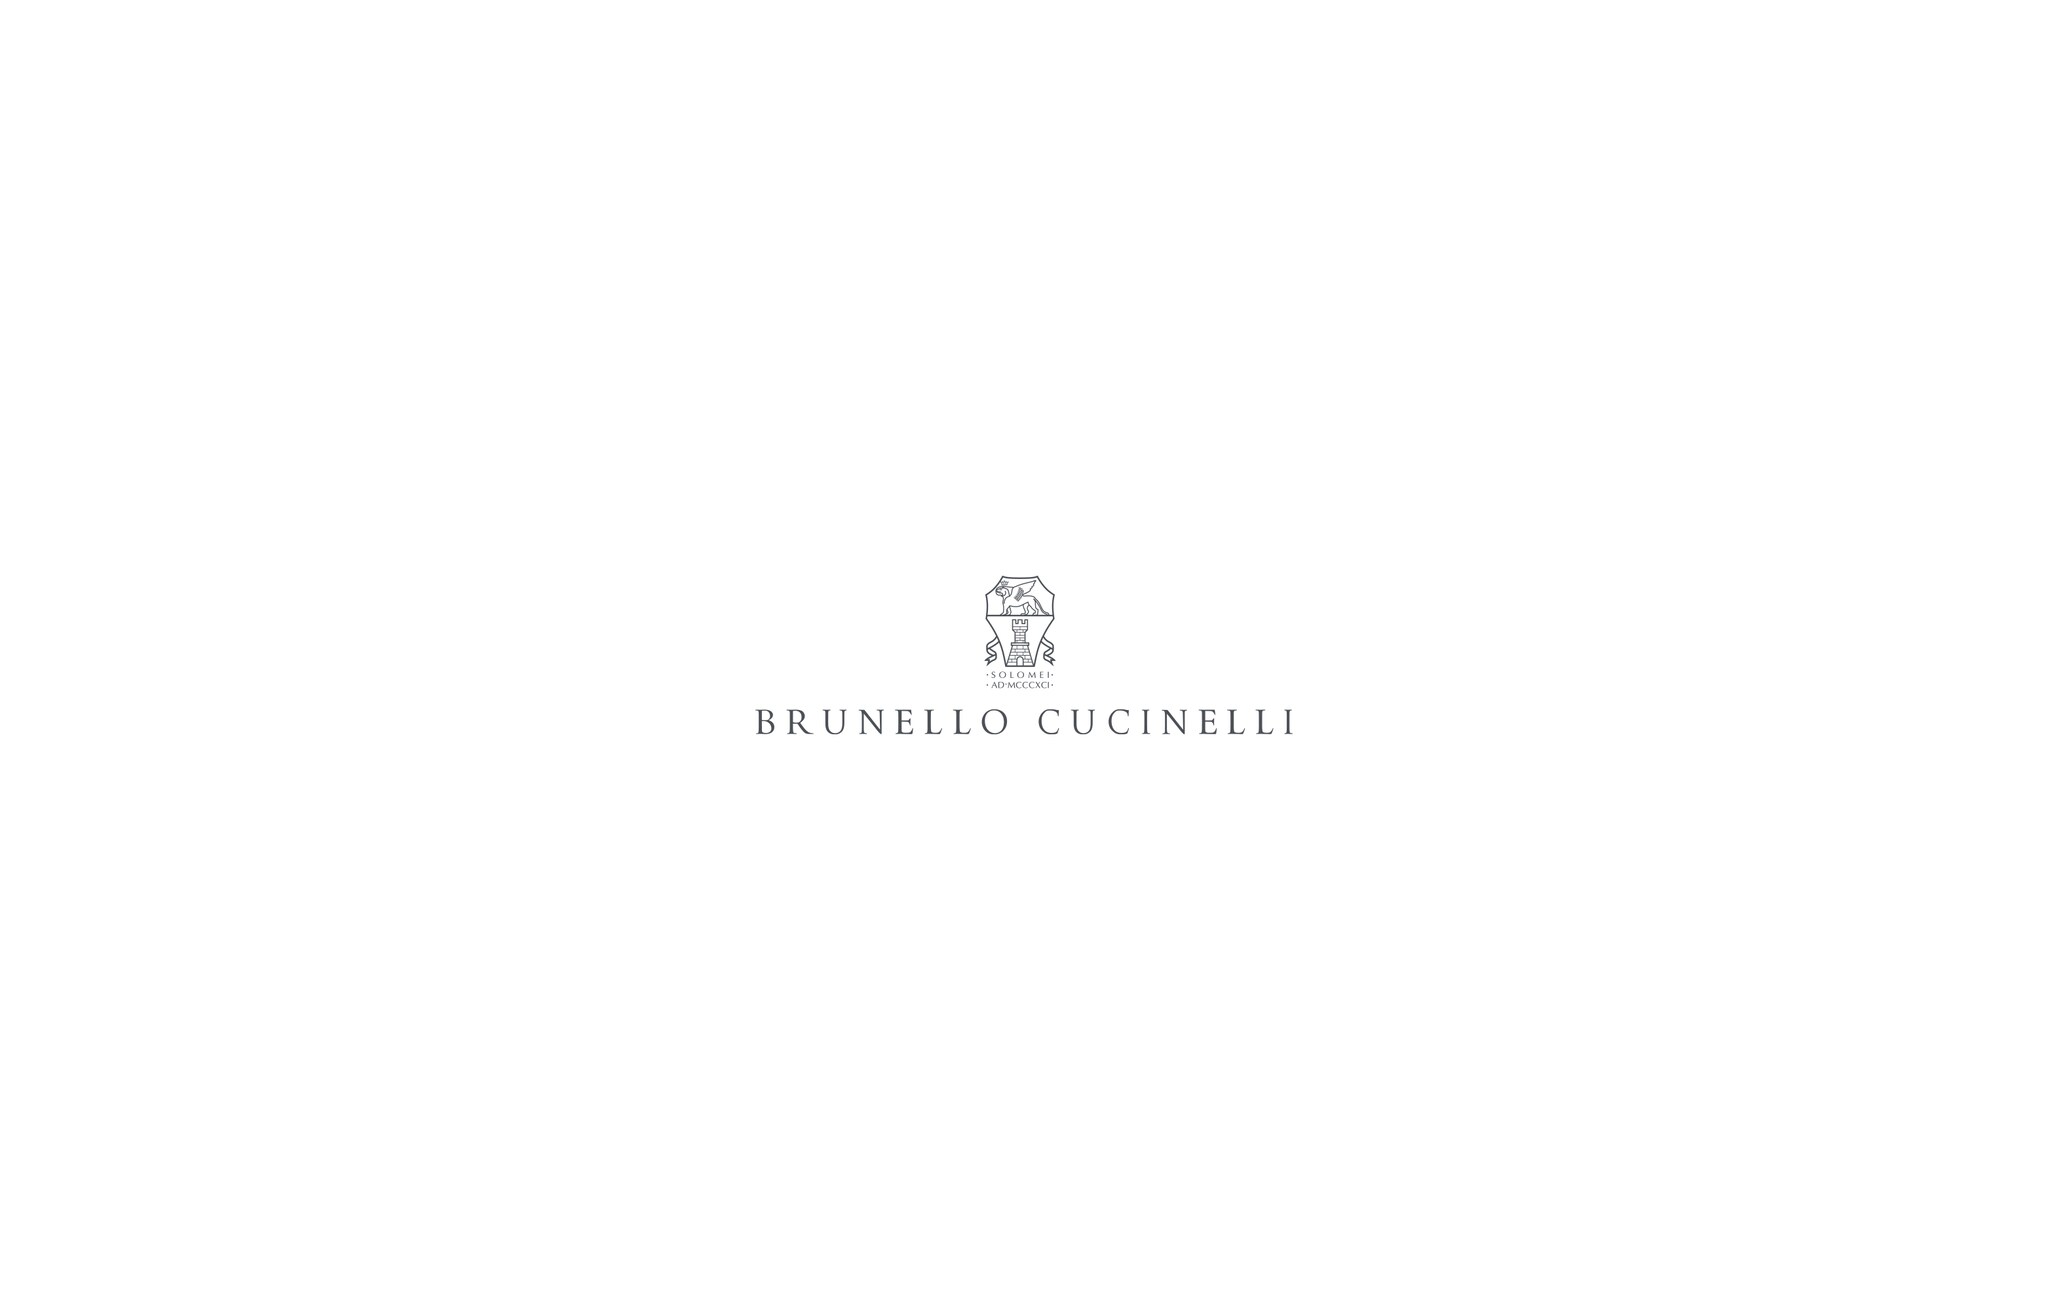  Chaqueta en sarga de lana y lino Denim Hombre - Brunello Cucinelli 